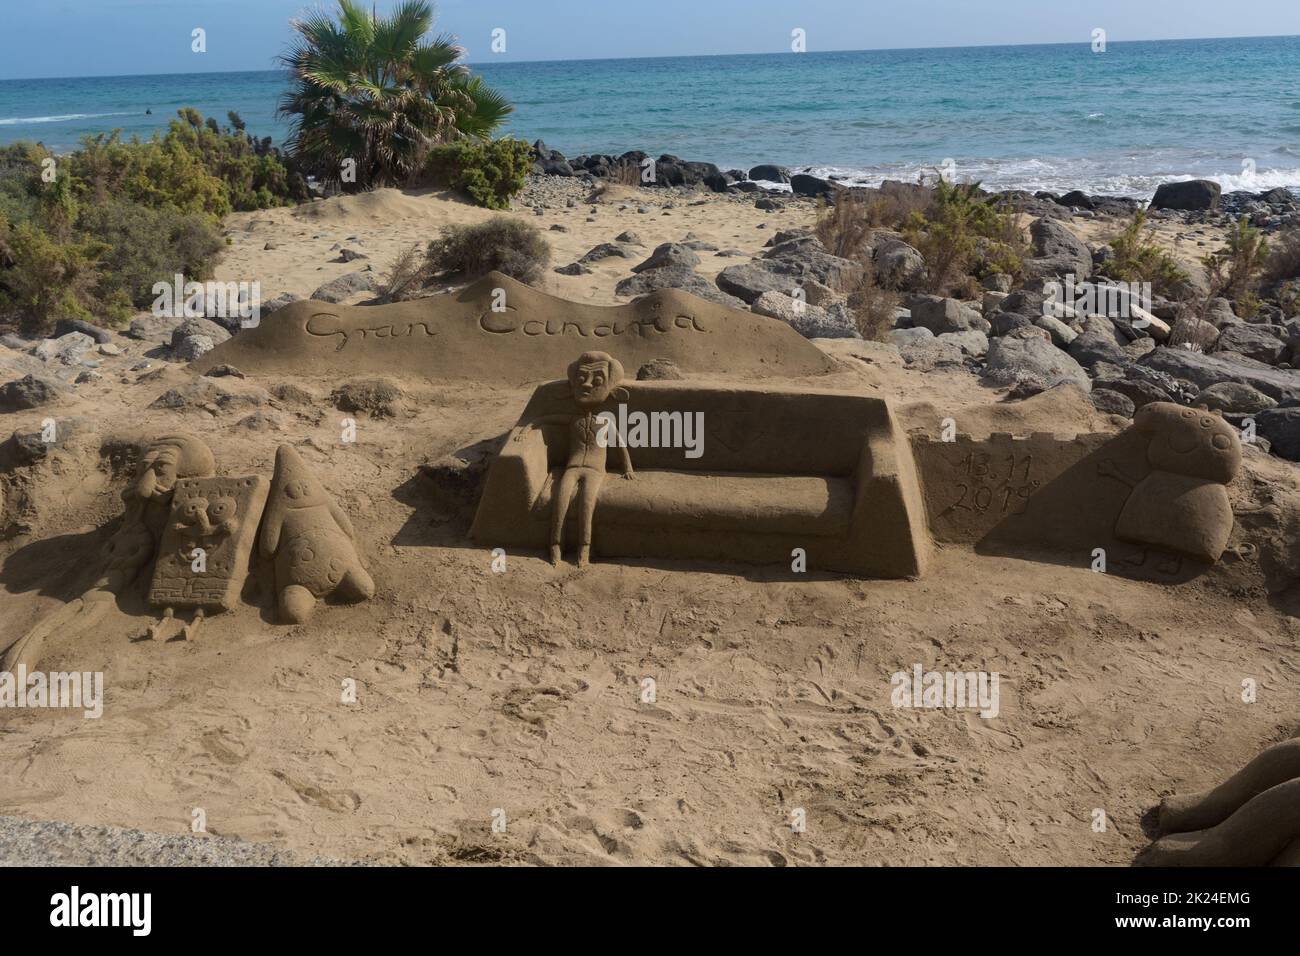 Cran Canaria, Meloneras, Spanien - 13. Novembre 2019: Sculture di sabbia sulla spiaggia di Meloneras, Spagna con iscrizione Gran Canaria Foto Stock